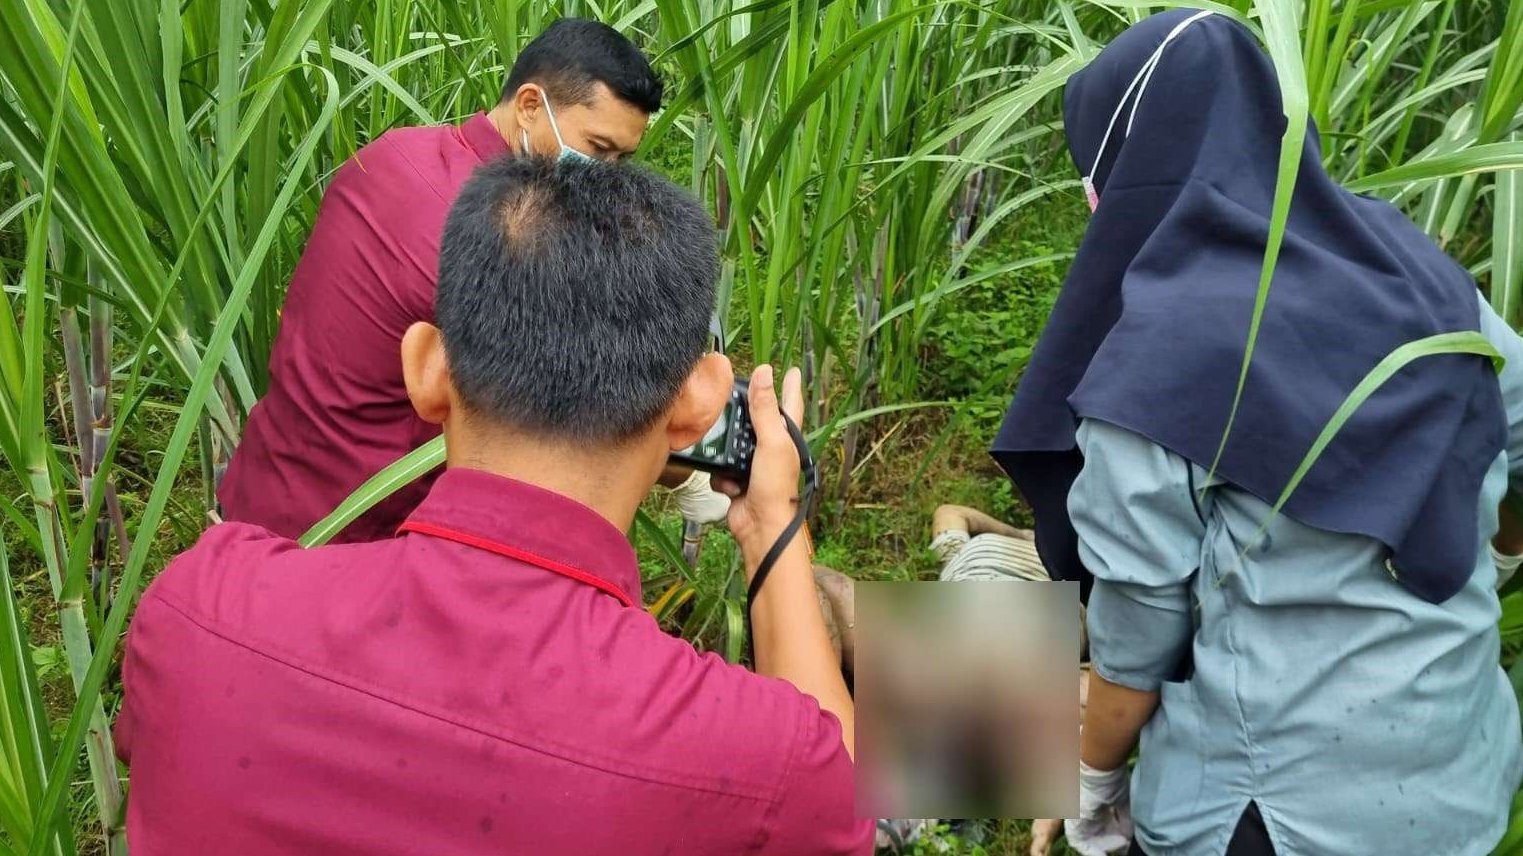 Penemuan mayat perempuan tanpa identitas dan orok bayi didekatnya di sebuah kebun tebu desa Siman, Kecamatan Kepung, Kediri. (Foto: Istimewa)